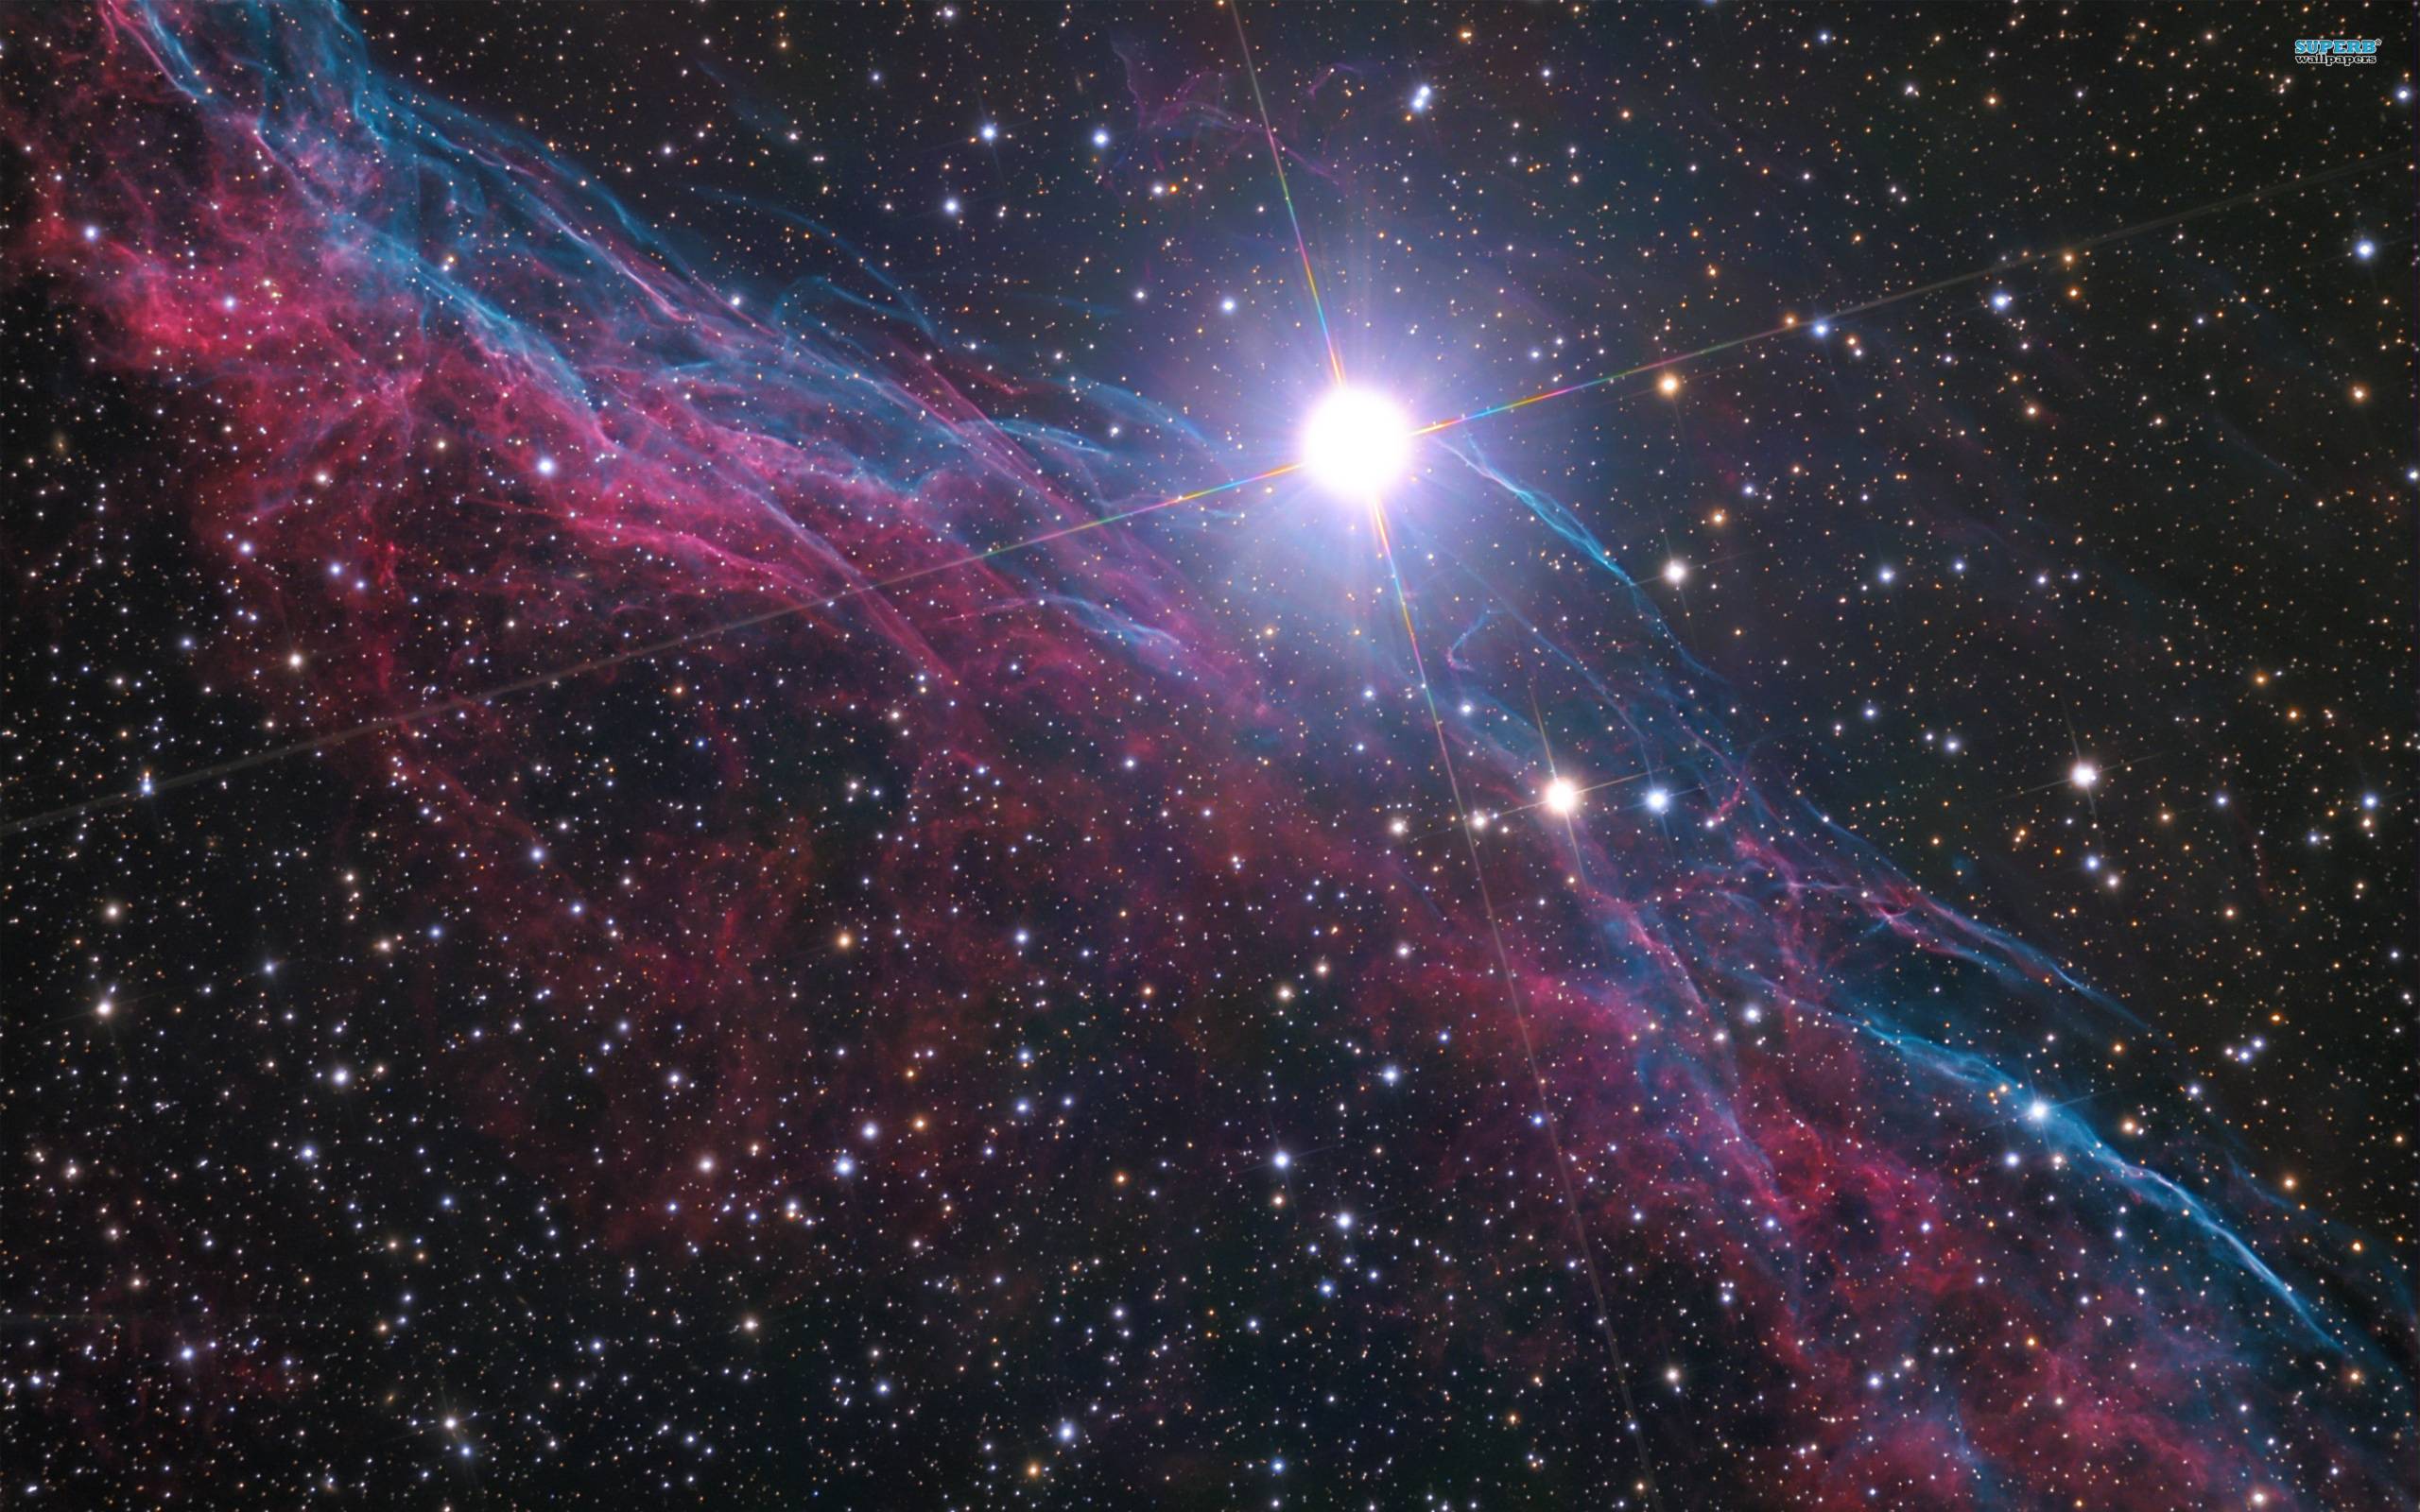 Veil Nebula 8148